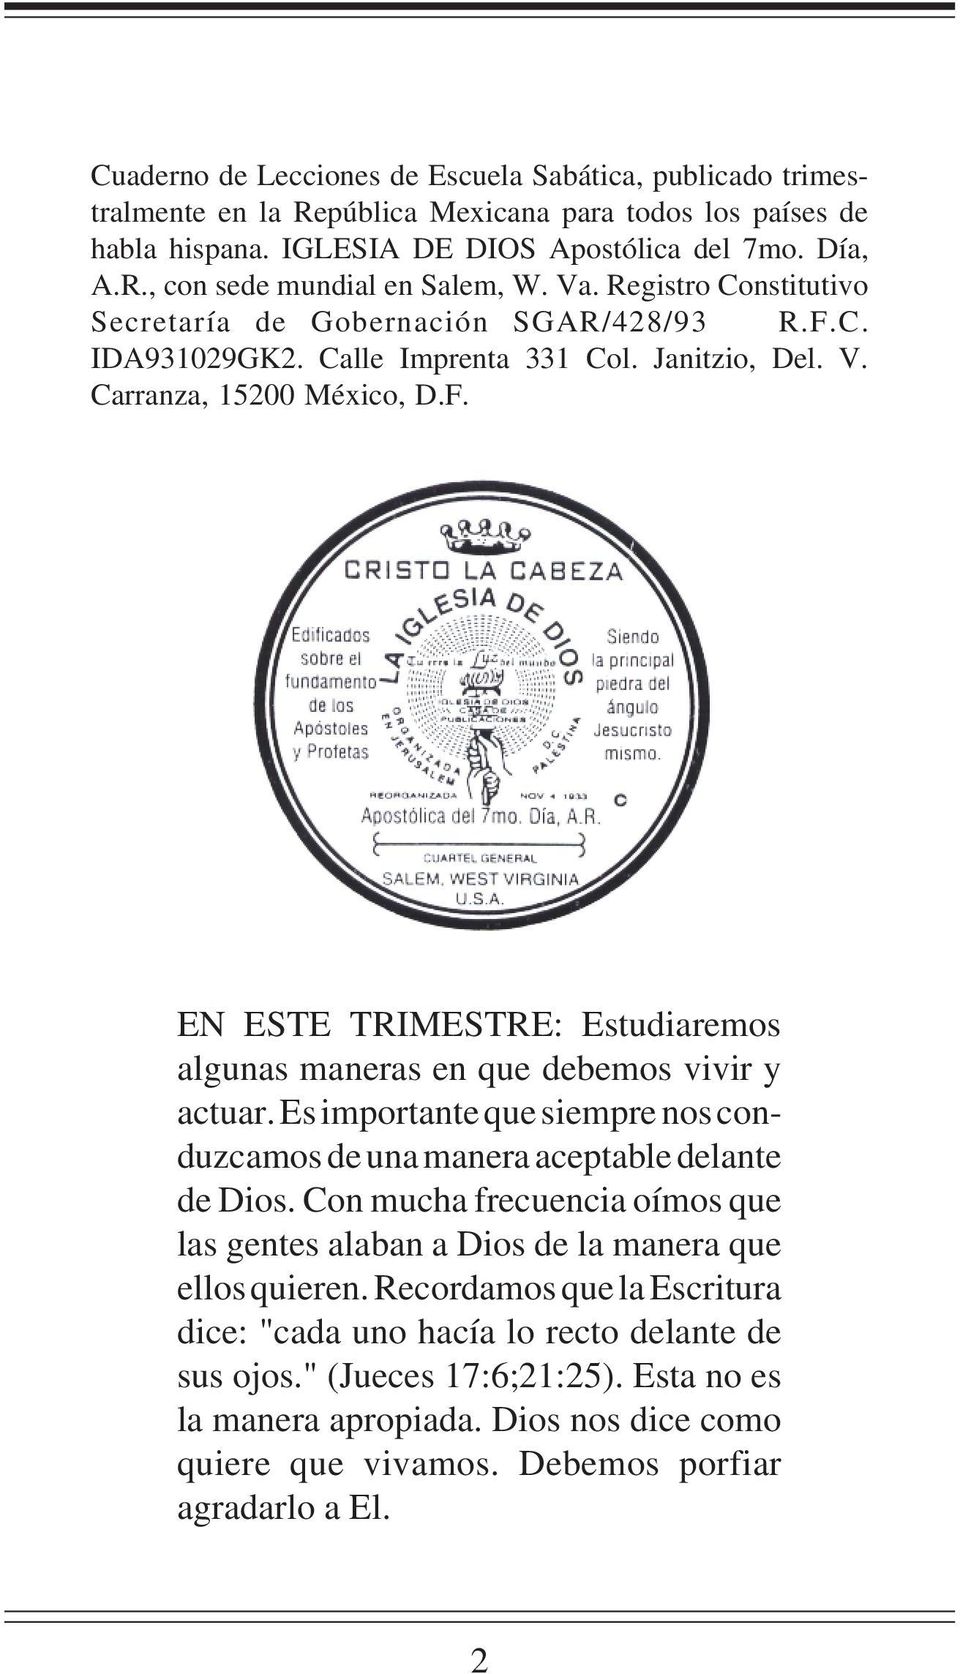 Cuaderno de Lecciones de Escuela Sabática IGLESIA DE DIOS. Apostólica del  7mo. Día, A. R. - PDF Descargar libre